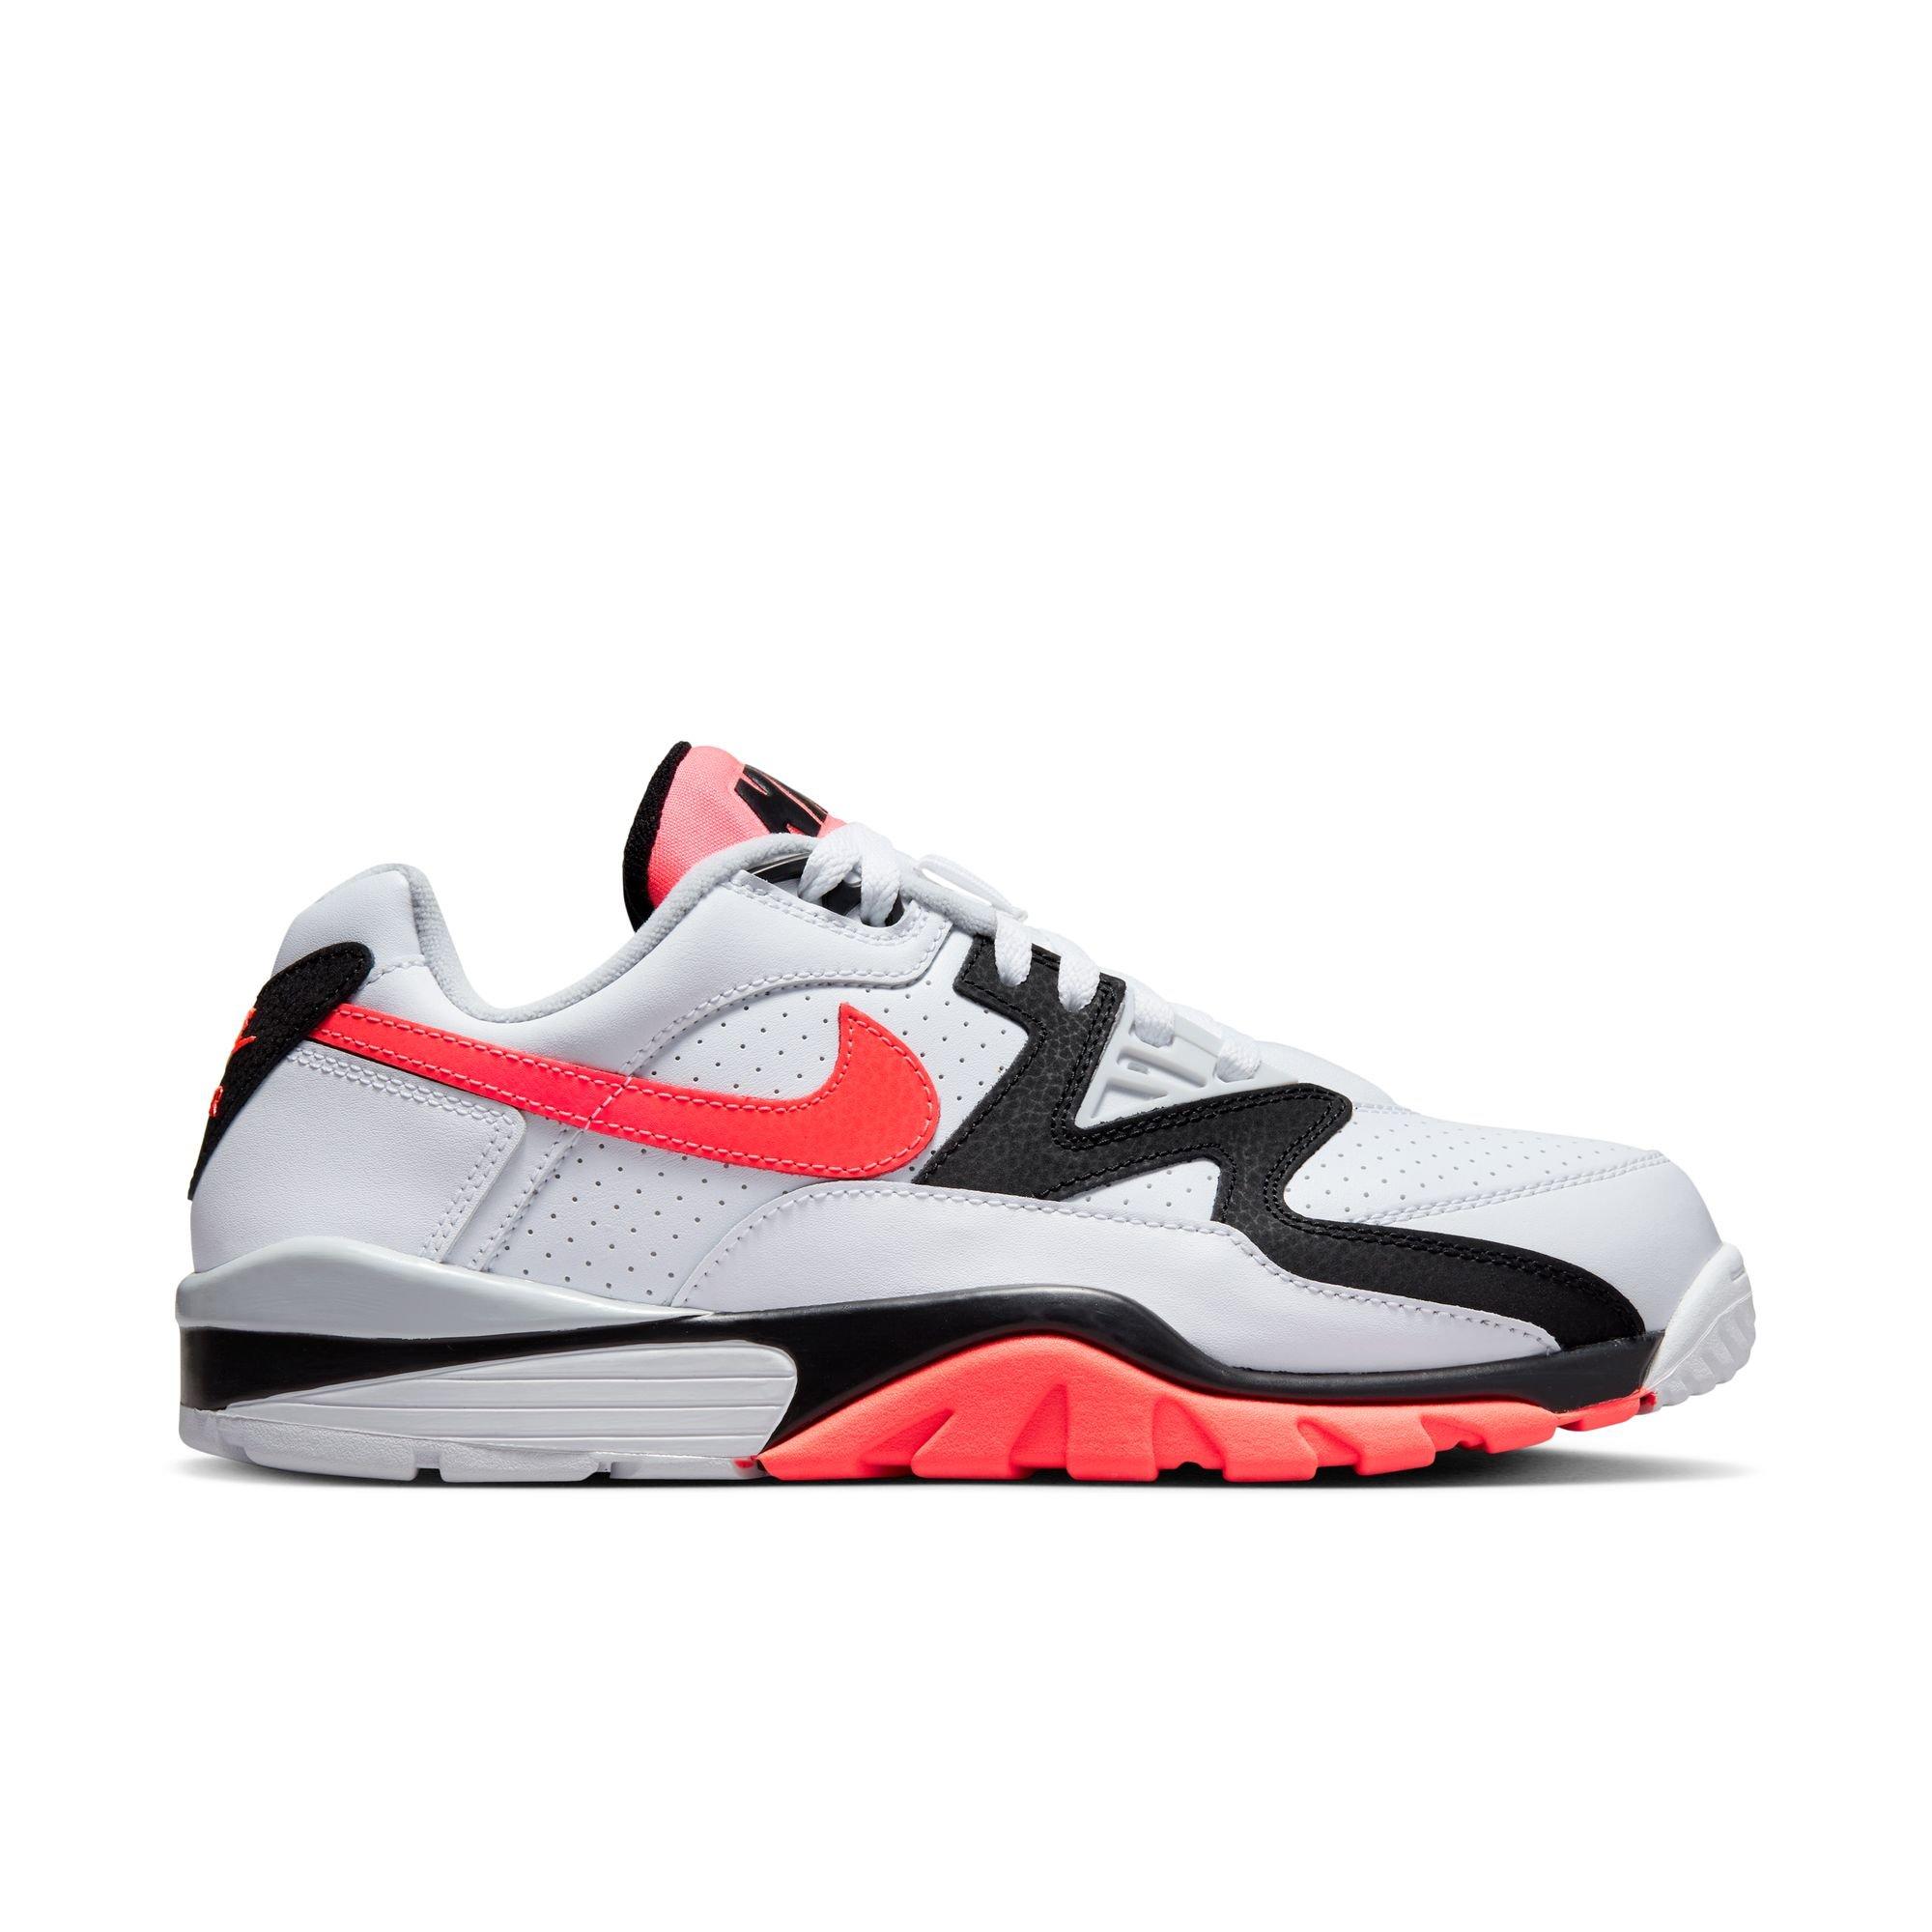 Borradura apasionado Acurrucarse Nike Cross Trainer 3 Low "White/Hot Lava/Black/Pure Platinum" Men's Shoe